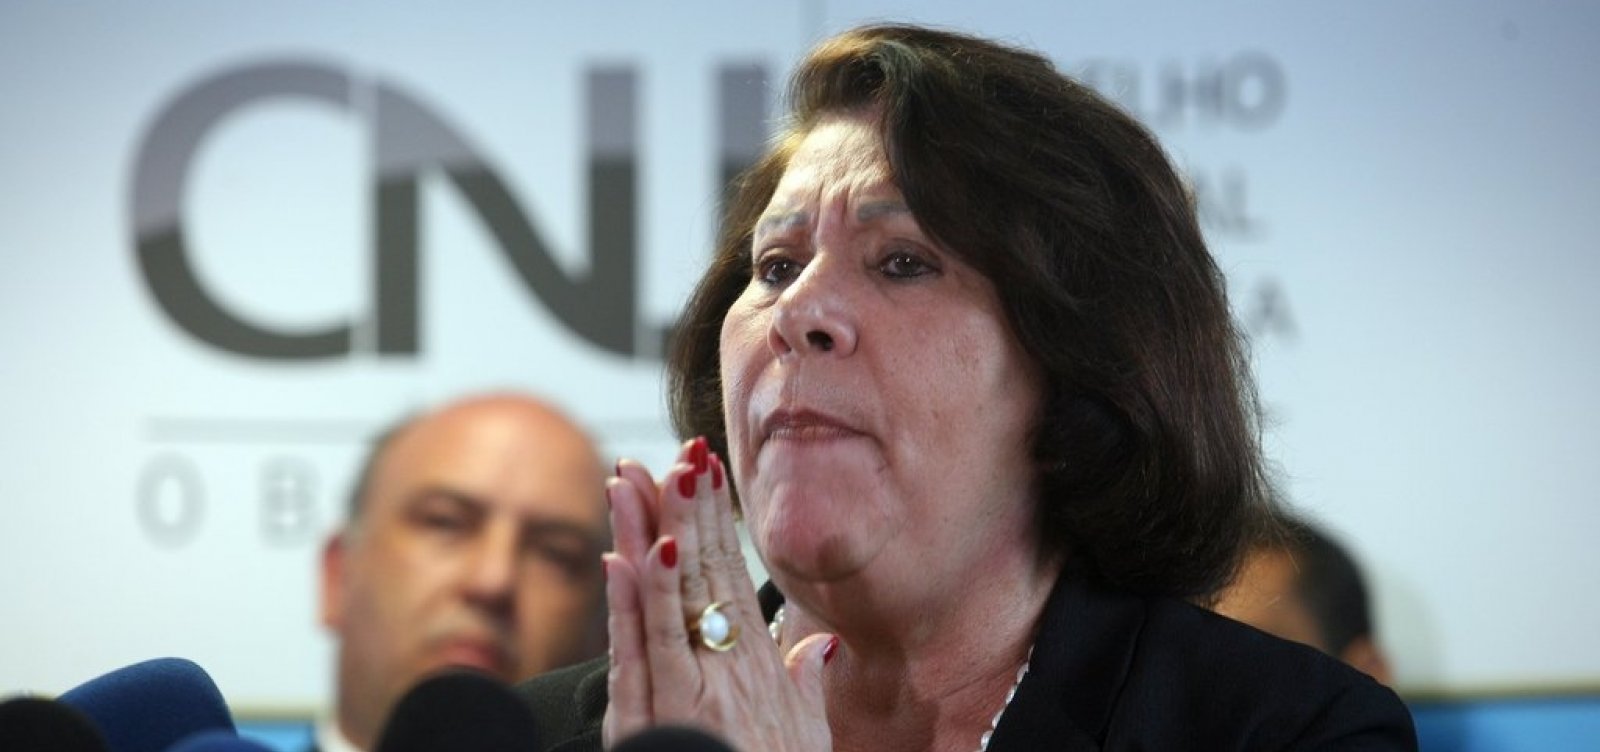 Eliana Calmon avalia que é 'exagero' pedir investigação contra filho de Bolsonaro